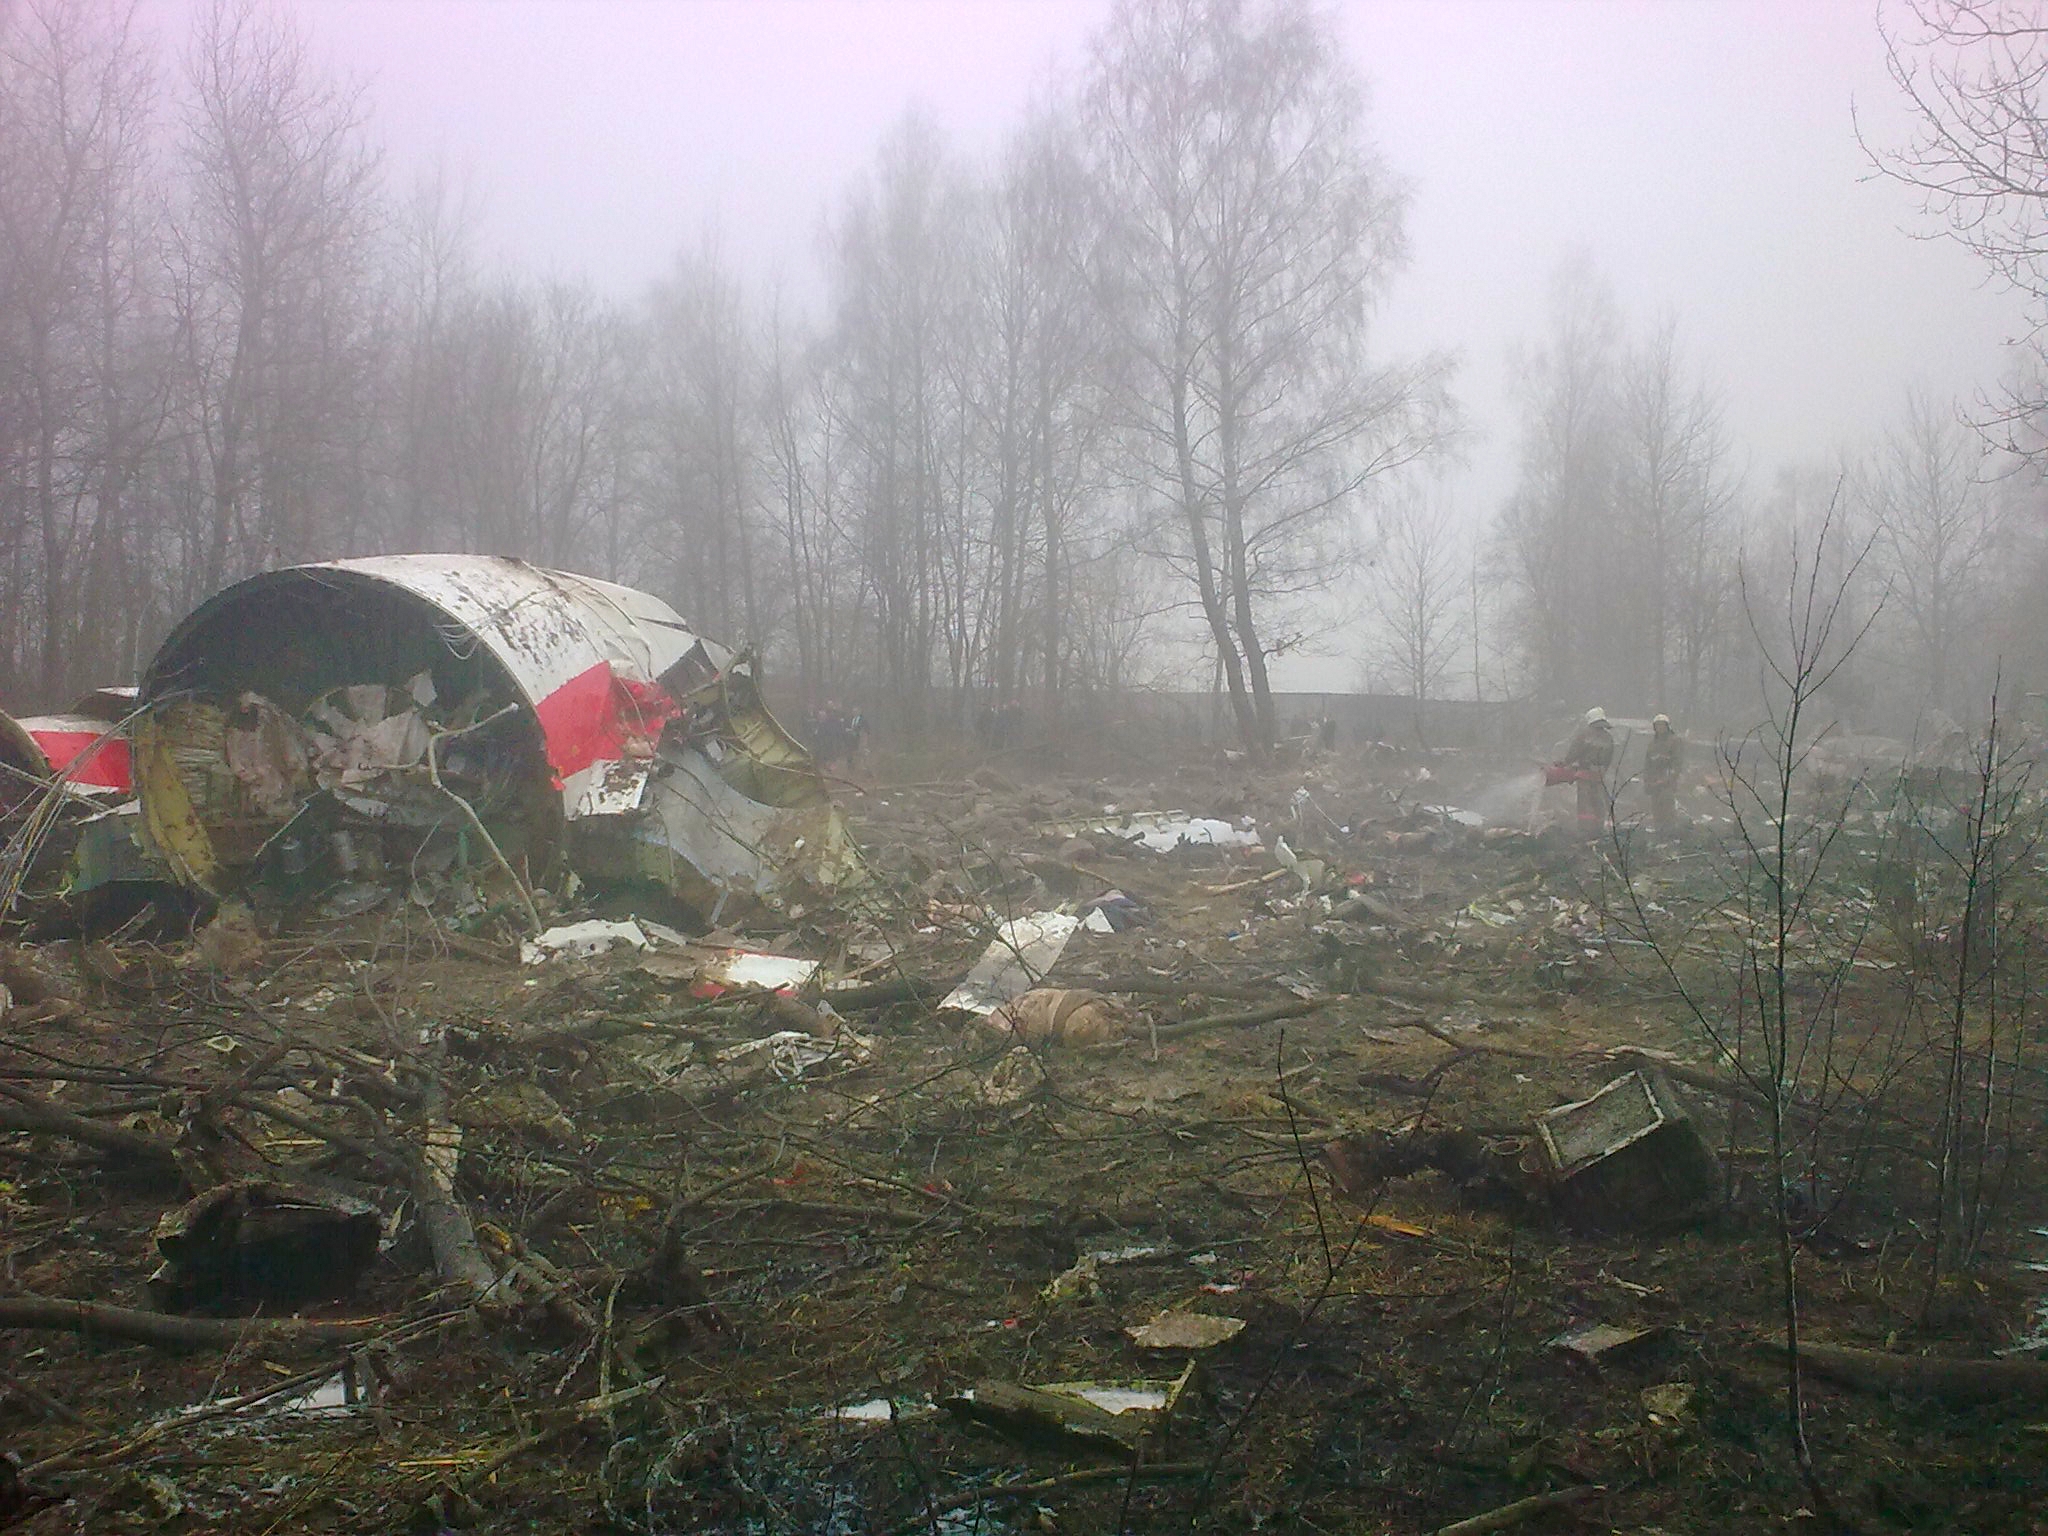 15 апреля 2010. Катастрофа польского ту-154 под Смоленском. Ту 154 Качиньского крушение. Катастрофа ту-154 в Смоленске. Крушение ту-134 под Смоленском (2010).